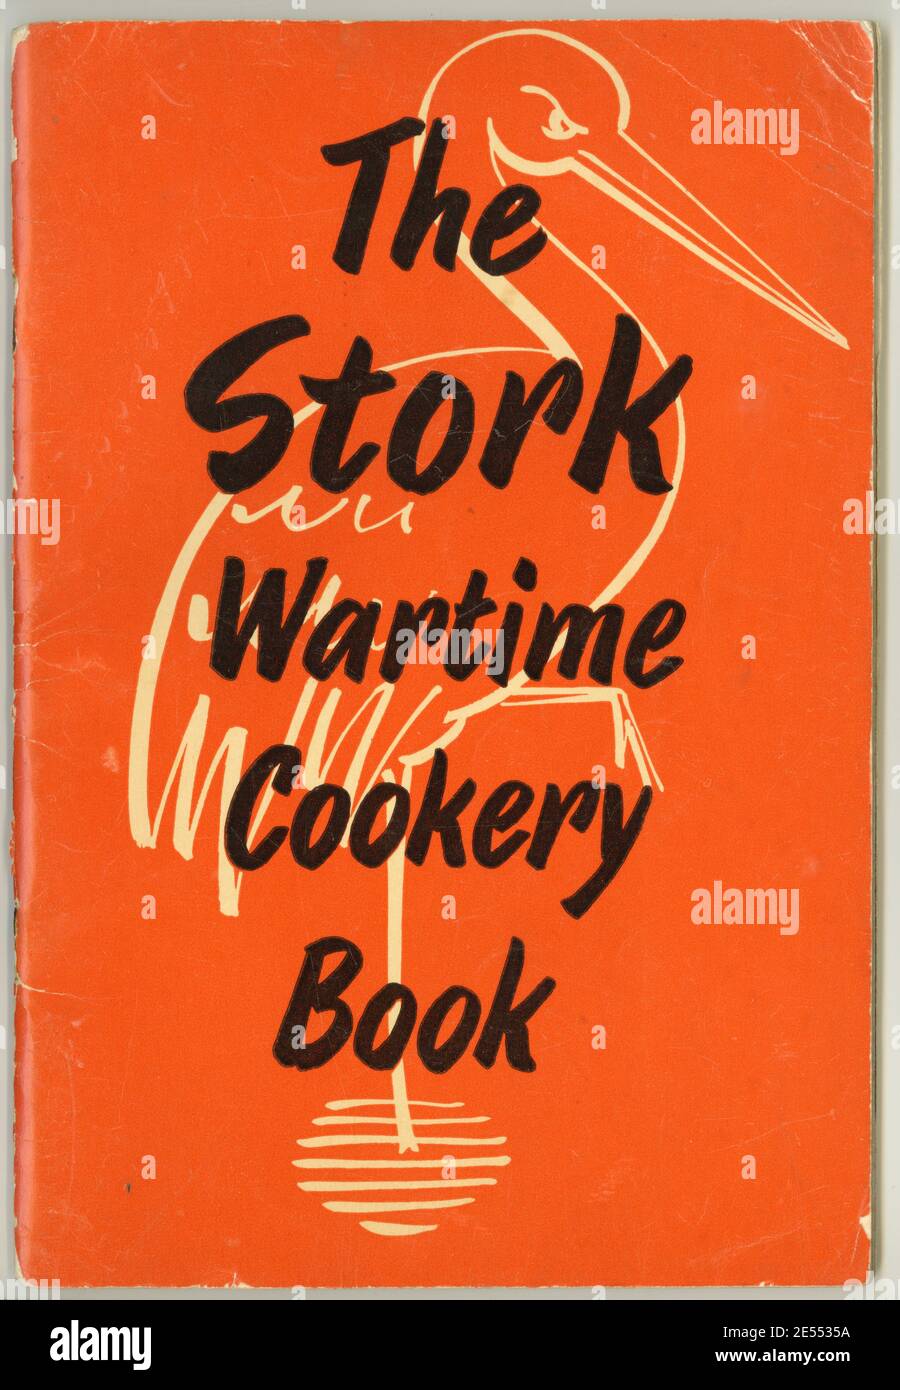 The Stork Wartime Cookery Book, scritto da Susan Croft, Londra, è un opuscolo promozionale pubblicato dalla Stork Margarine Company, Regno Unito, che menziona incursioni aeree e guardiani A.R.P. quindi risale al 1940-41 circa (The Blitz). Foto Stock